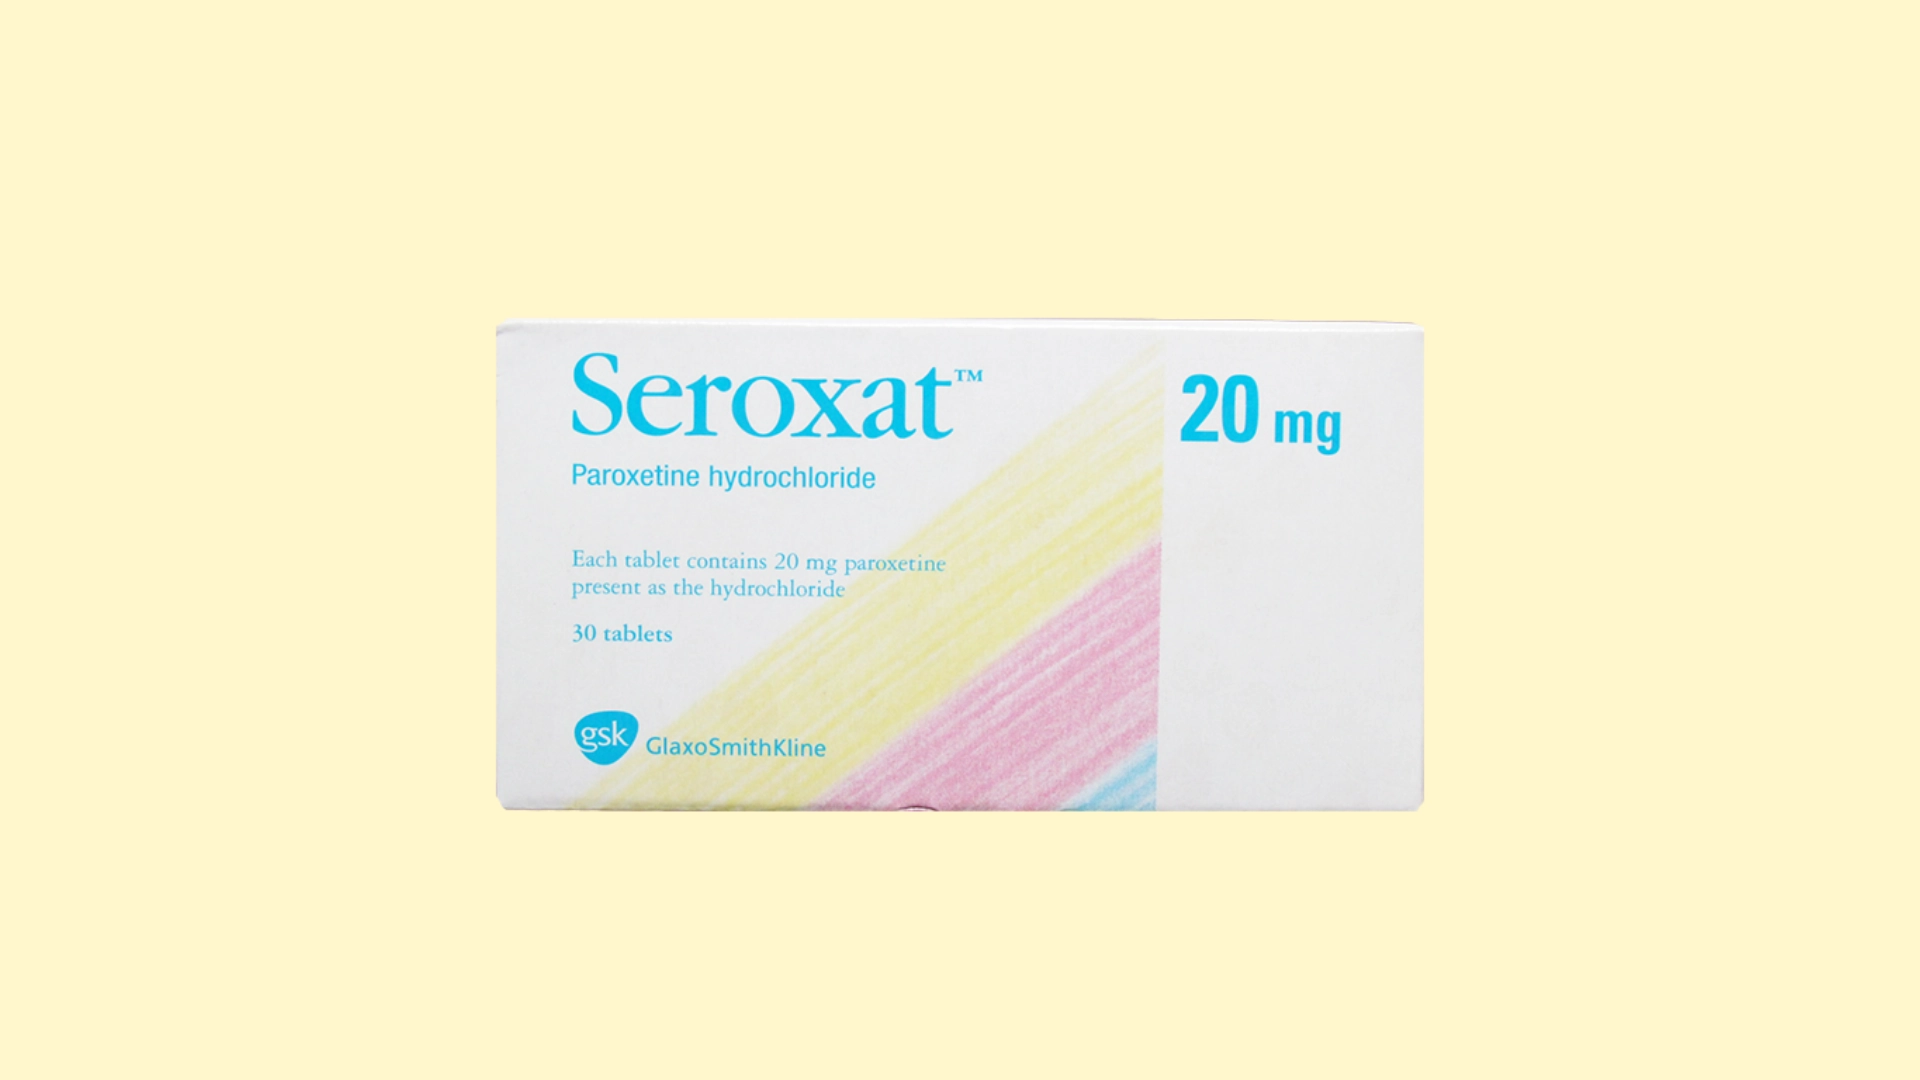 Seroxat - E-recepta - recepta online z konsultacją | cena, dawkowanie, przeciwwskazania